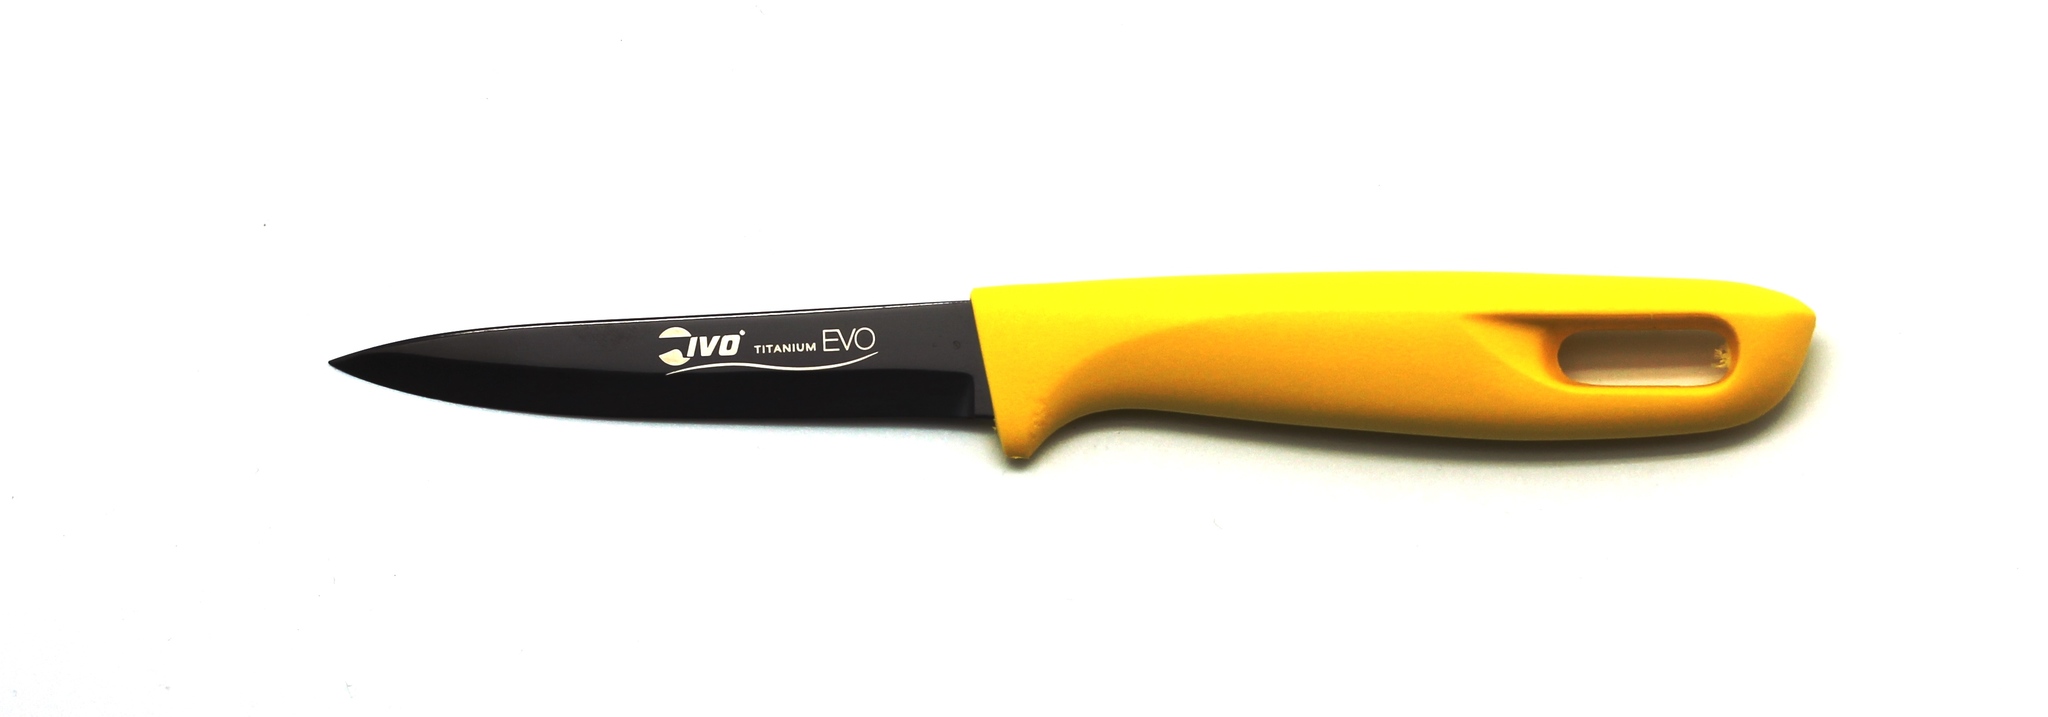 Нож кухонный 6 см, артикул 221022.09.69, производитель - Ivo